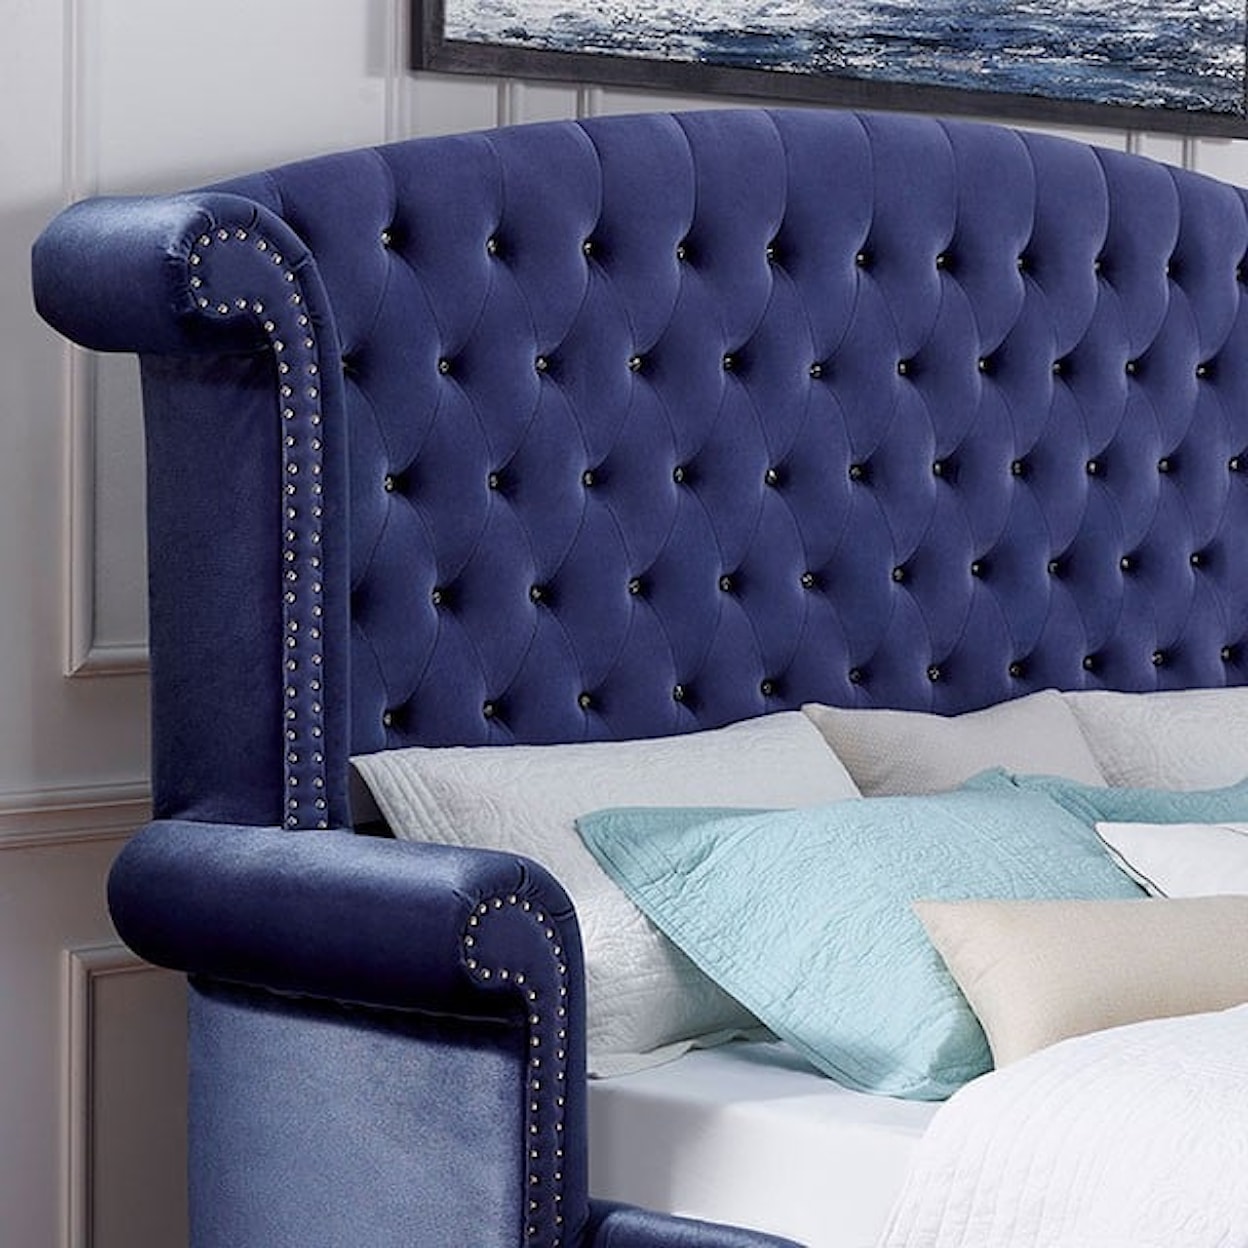 Furniture of America - FOA Alzir Cal.King Bed, Blue